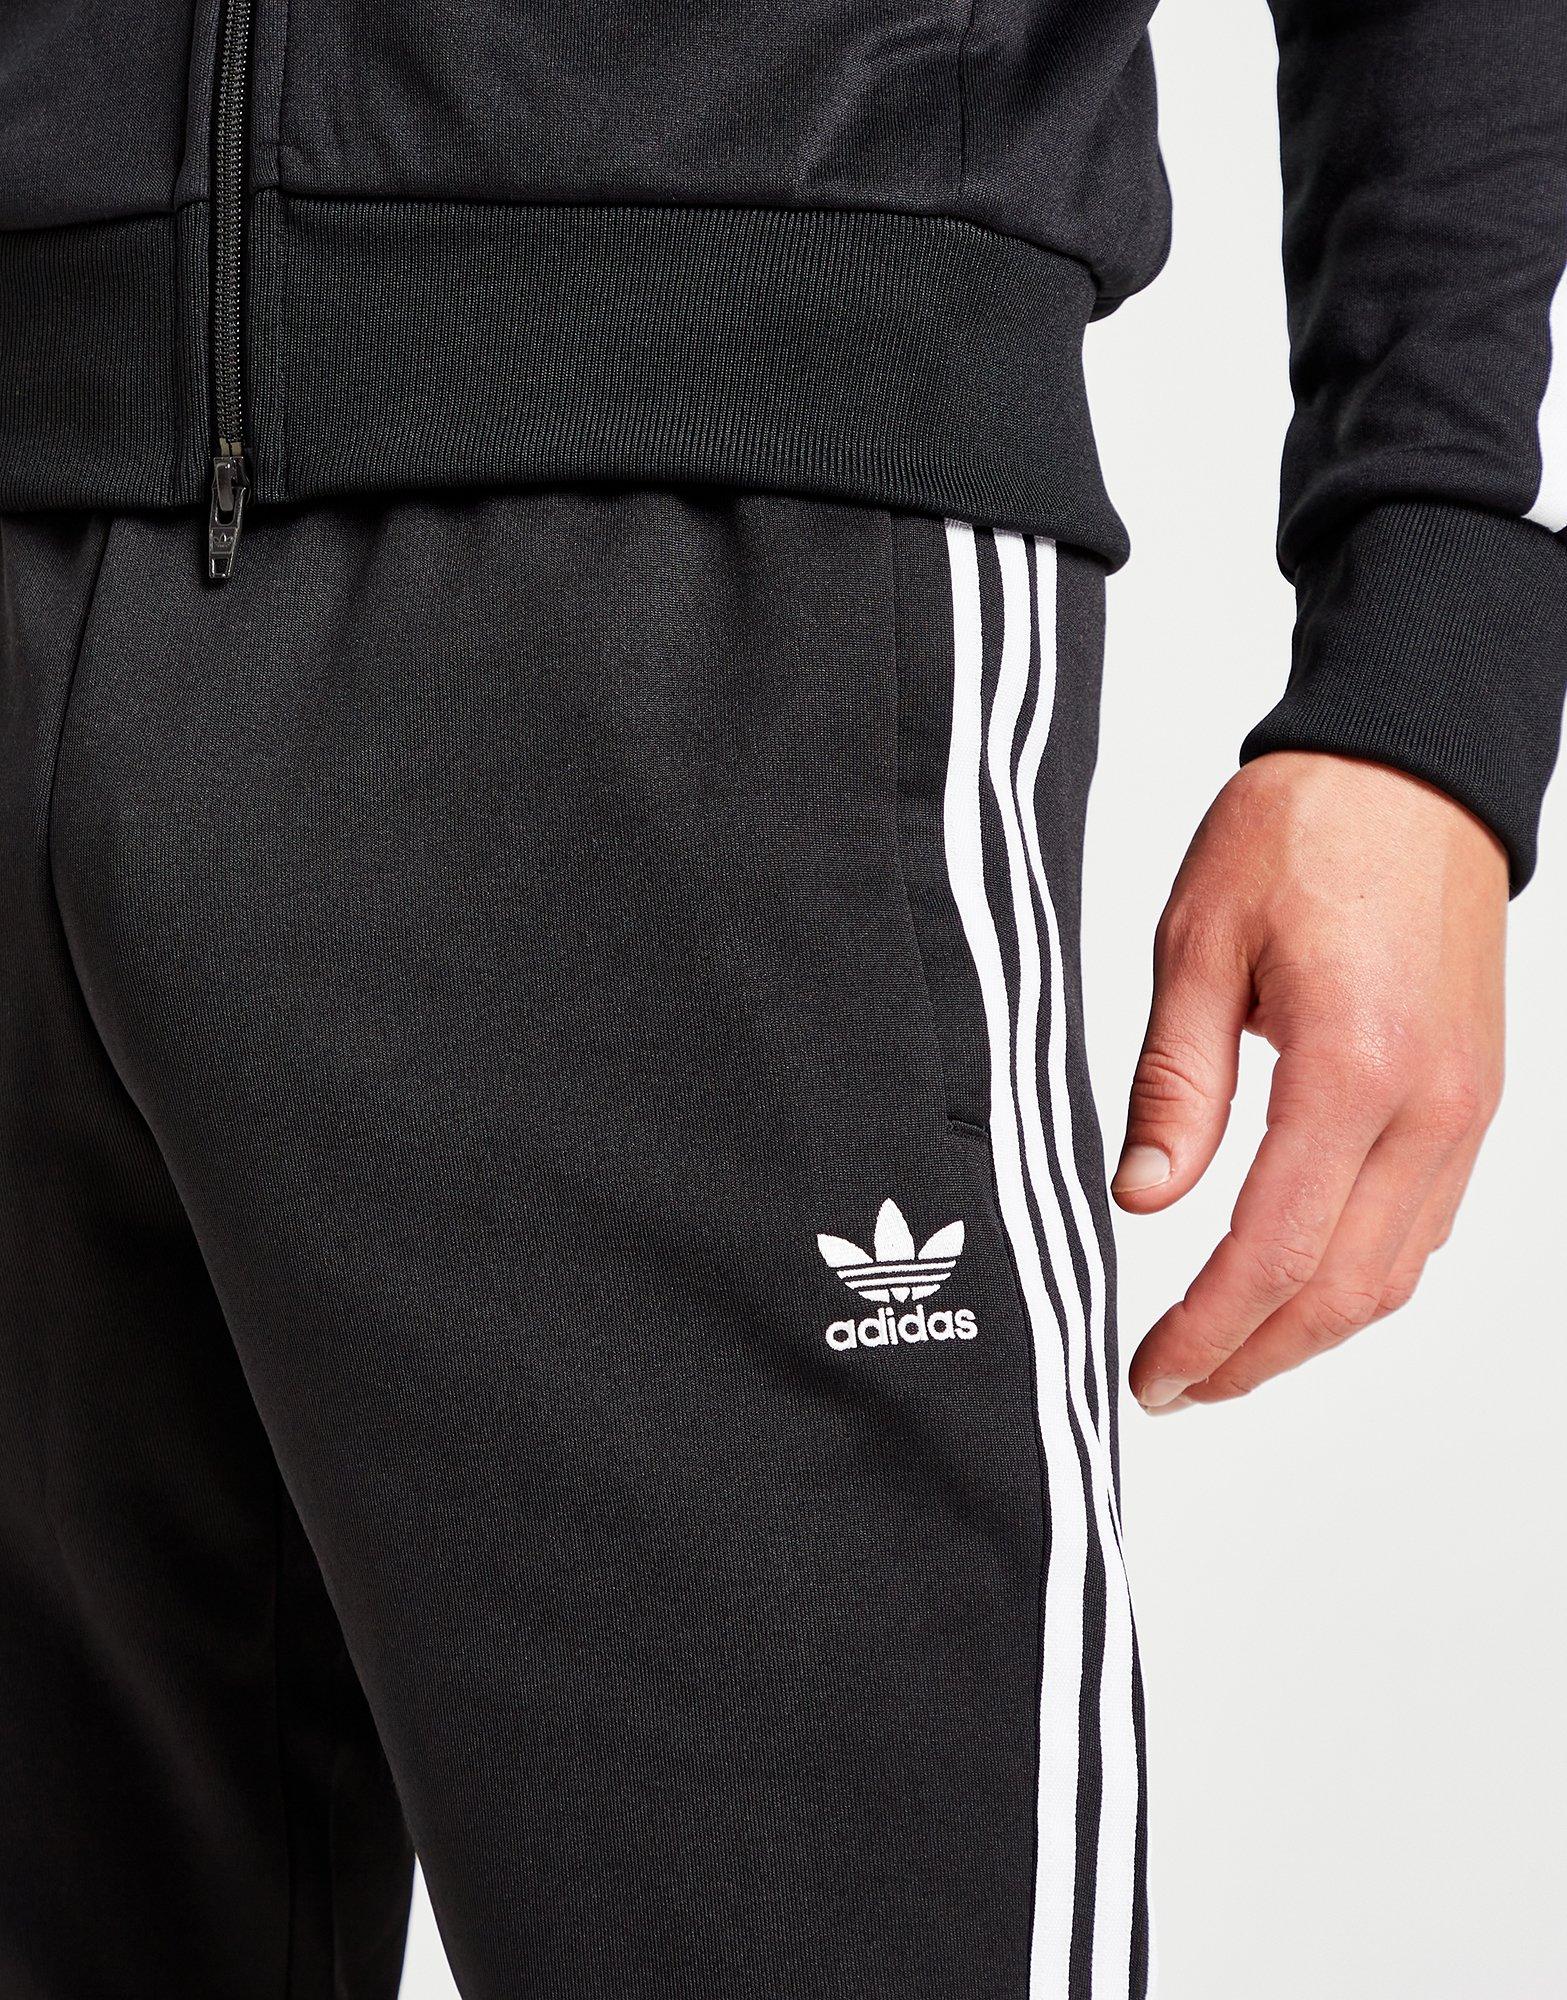 Survêtements Homme  Adidas Pantalon jogging Adidas Fitness 3 Stripes Noir  — Dufur